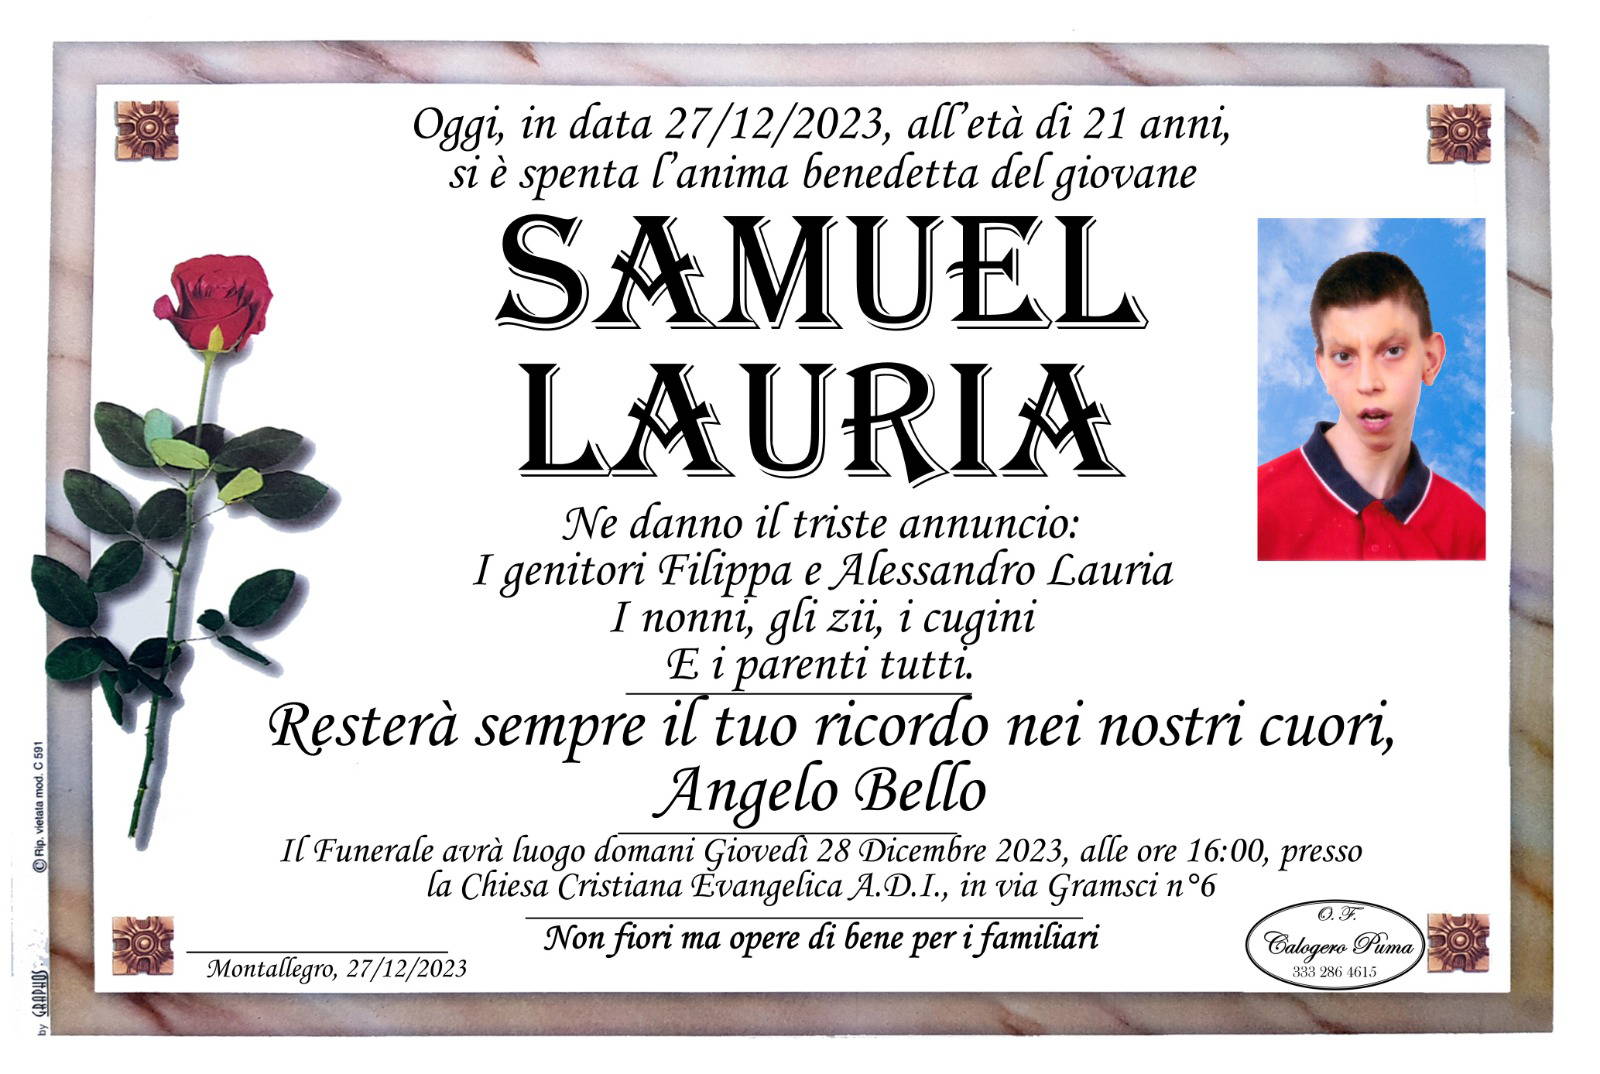 Samuel Lauria